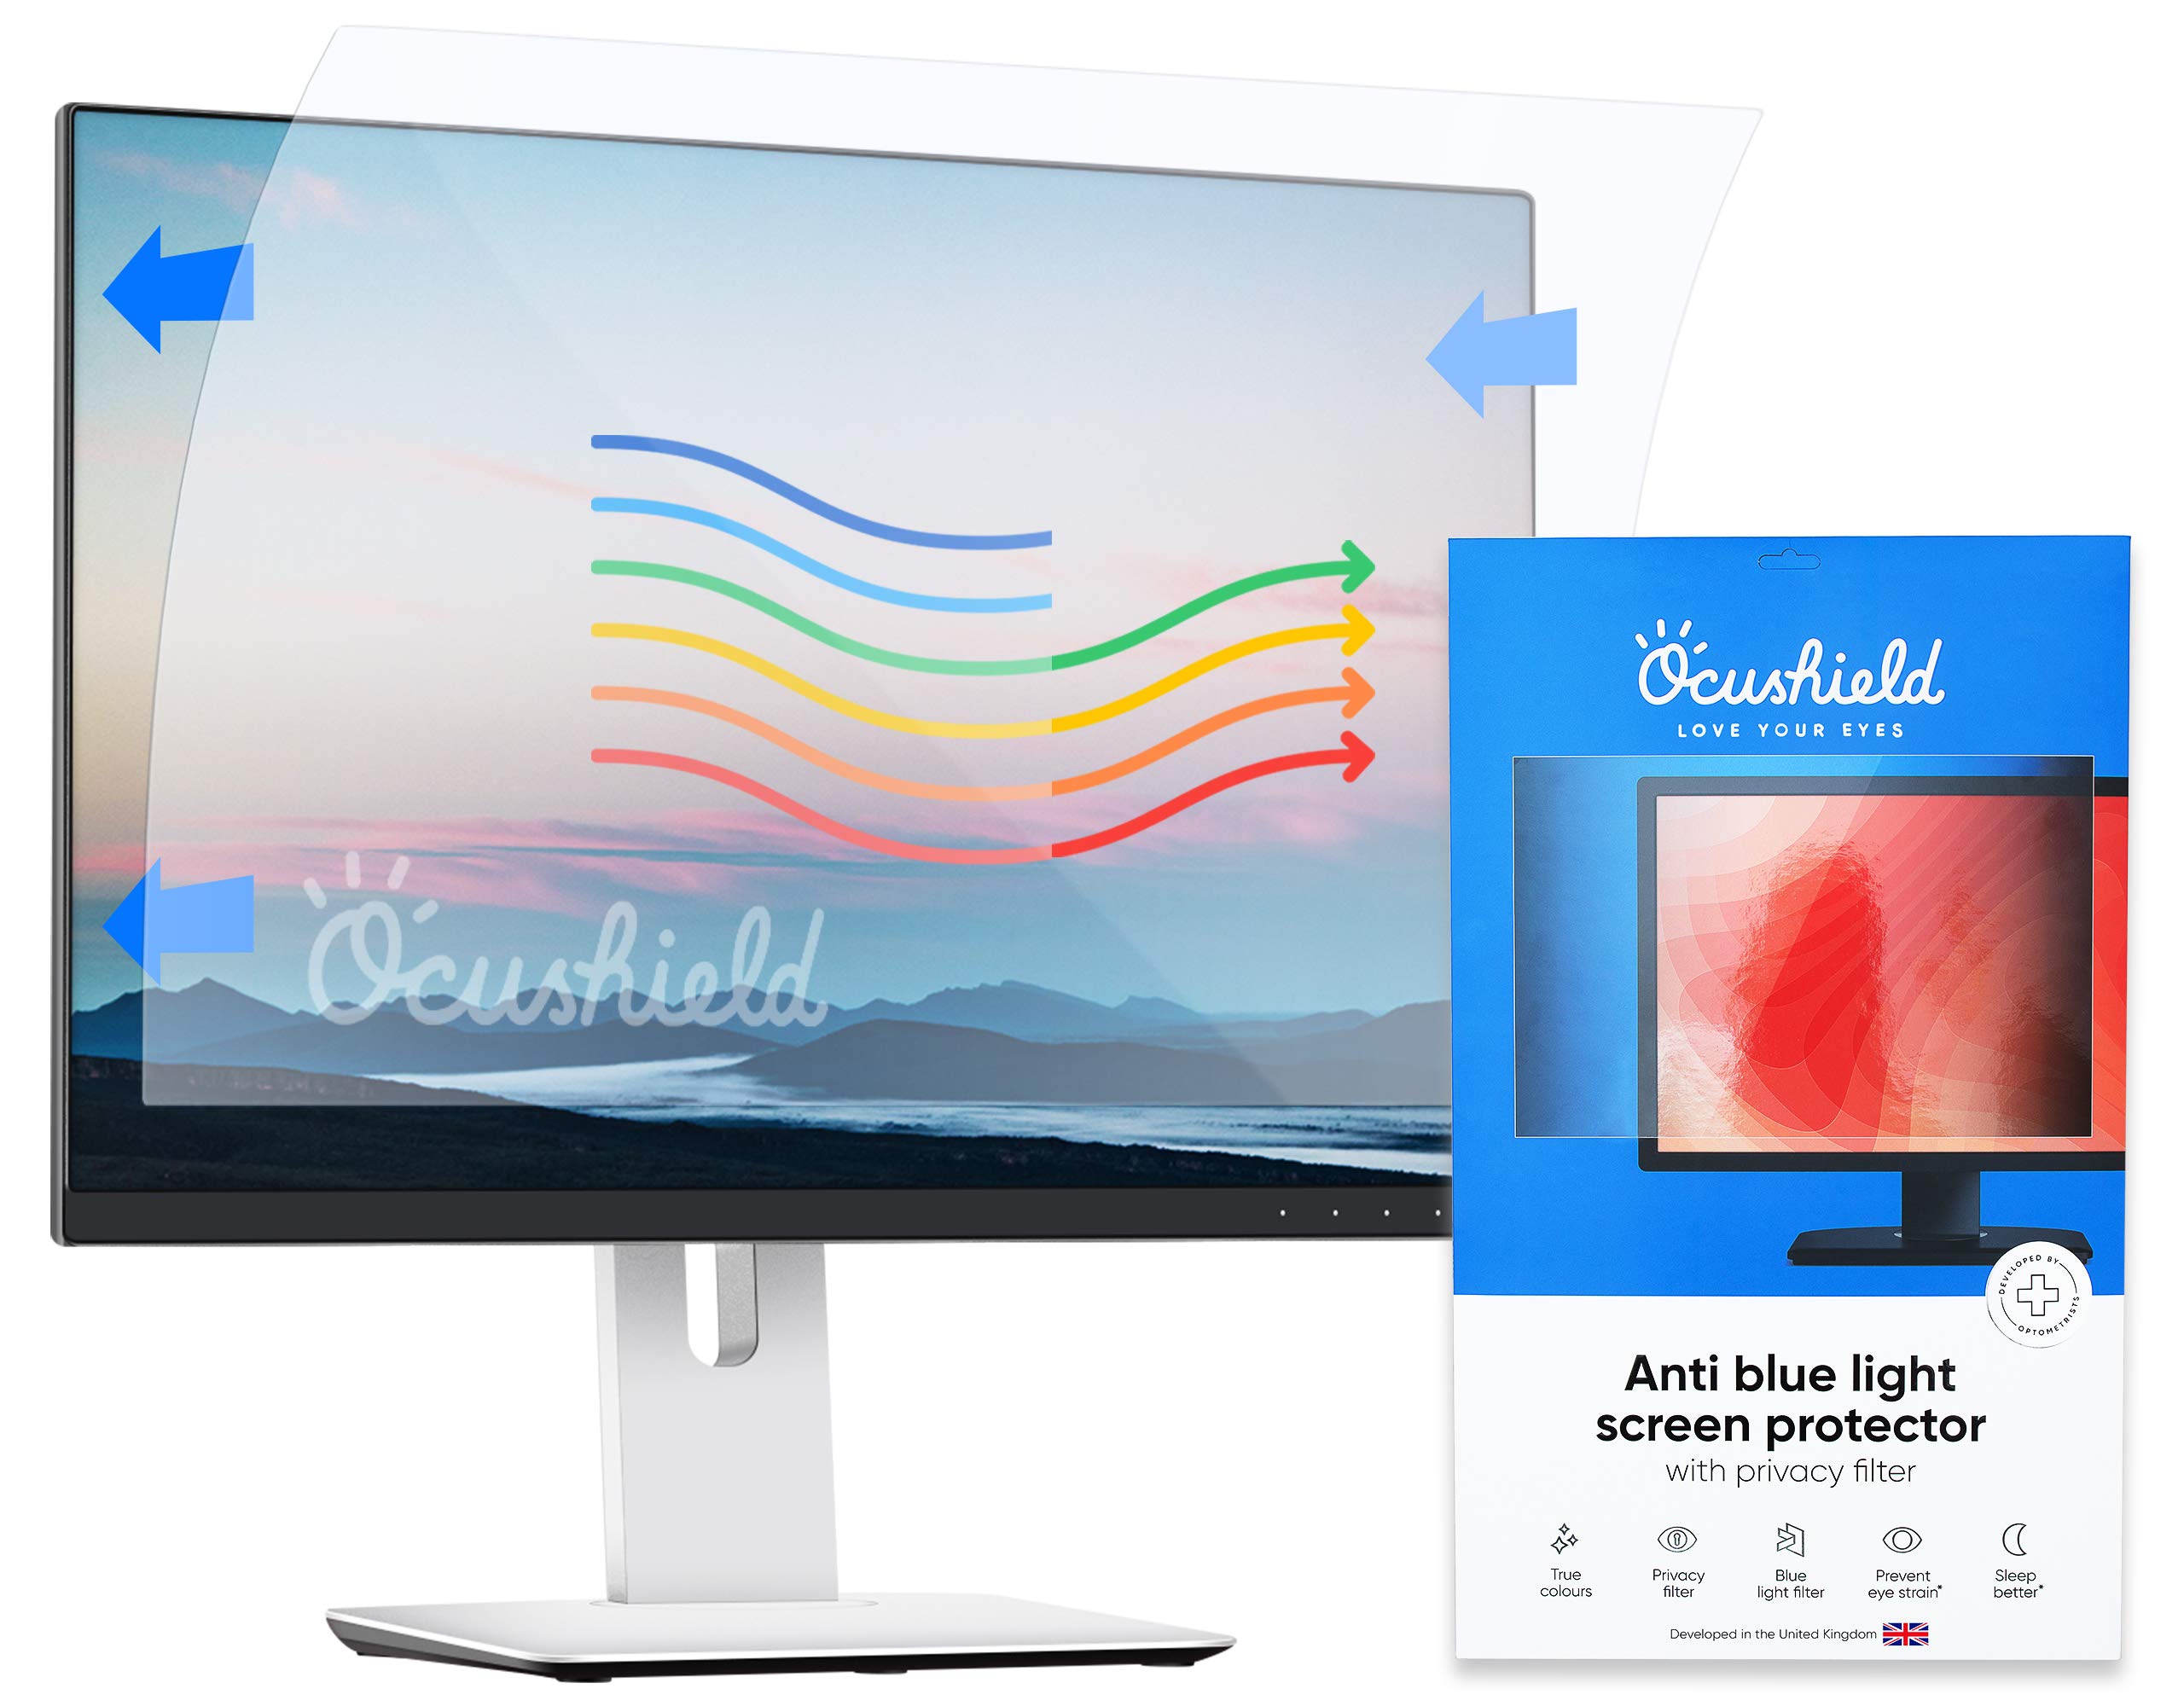 Ocushield Anti-Blaulicht 477 x 268mm PC Monitor Bildschirmschutz mit Privacy Filter – PC Bildschirm mit Blue-Light Sperrung – Blaulicht-Filter